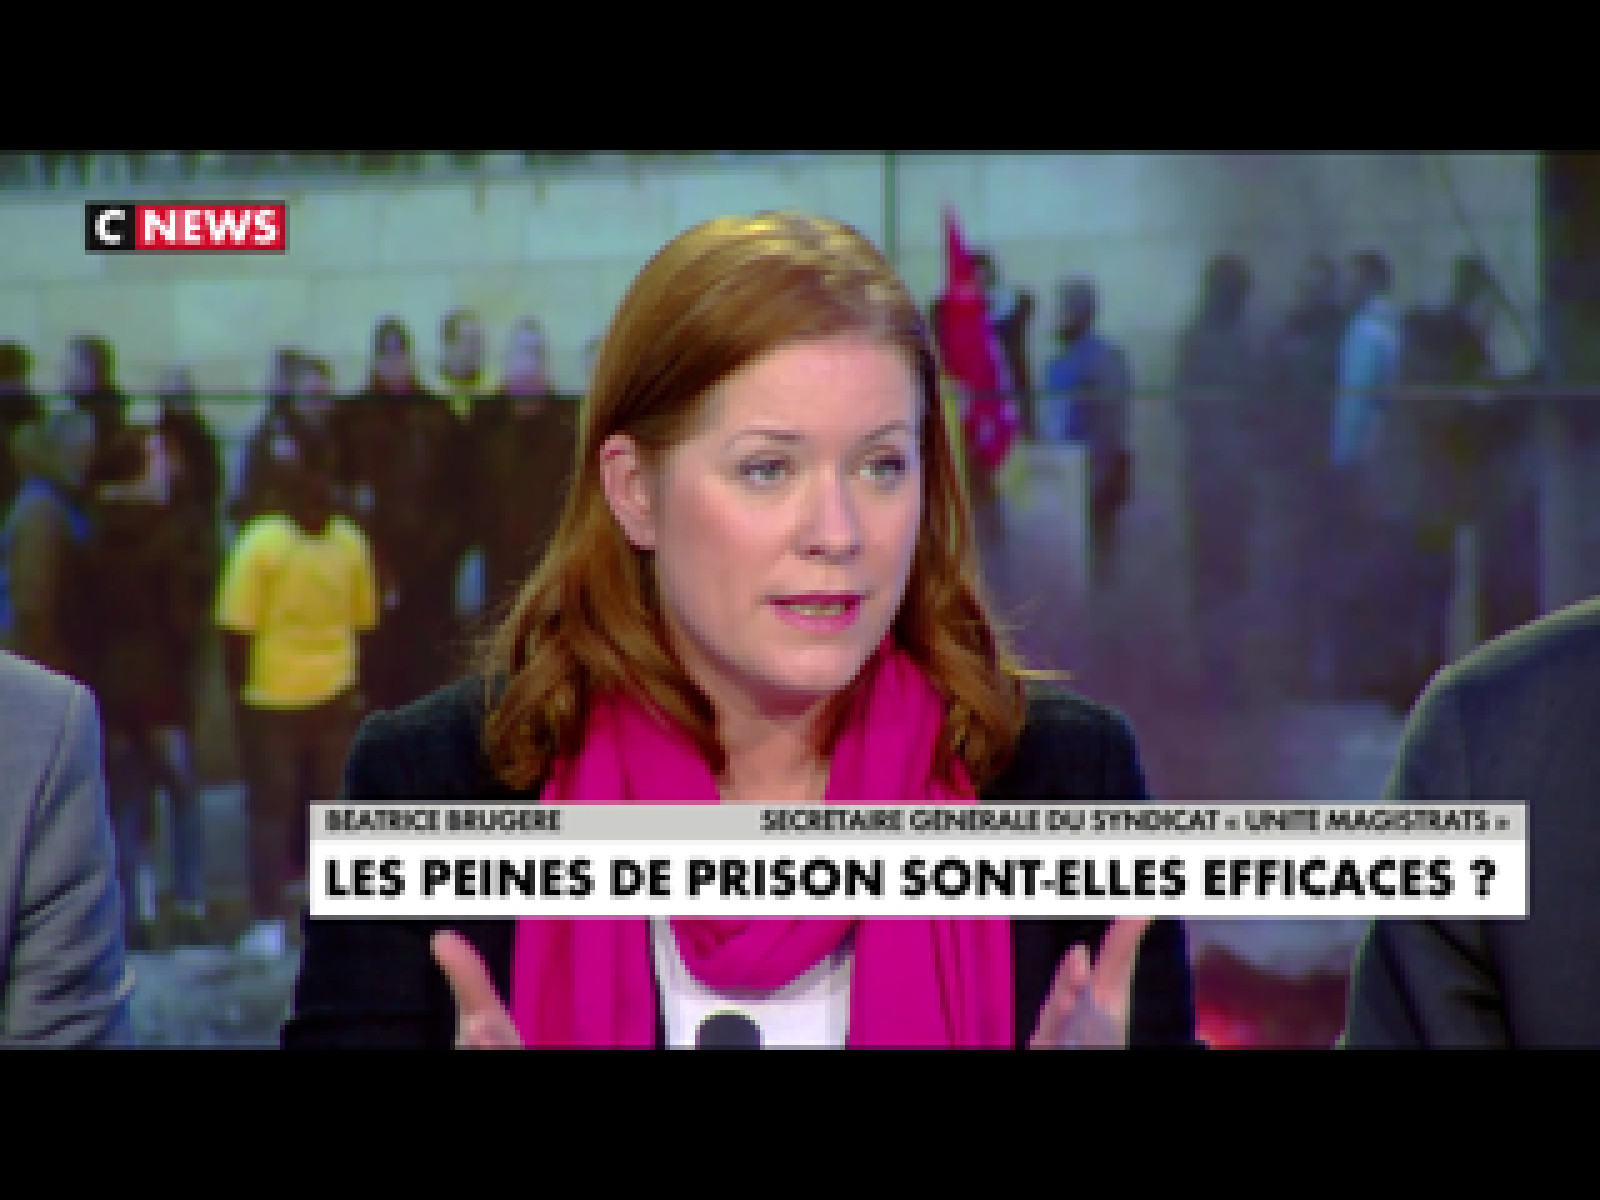 UNITE MAGISTRATS participe sur CNews au débat des Voix de l'info animé par Sonia Mabrouk : "Peines alternatives : Laxisme ou nécessité ?" - Syndicat Unité Magistrats SNM FO